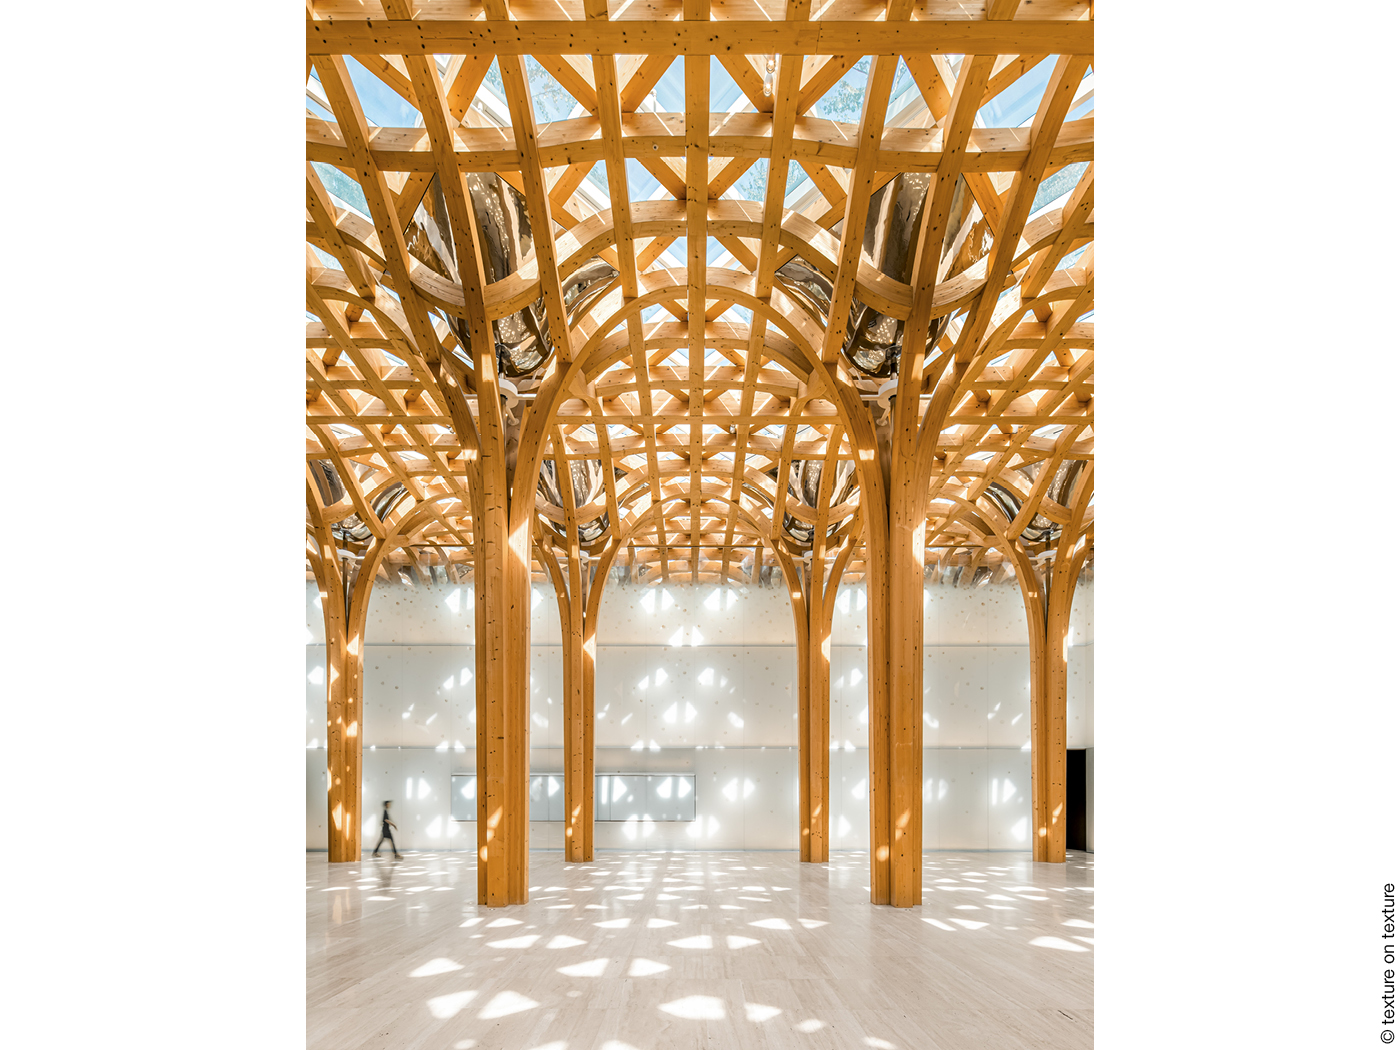 Das gläserne Dach wird von einer Holzkonstruktion getragen, die sich wier ein Wald aus Säulen unter der Decke verzweigt